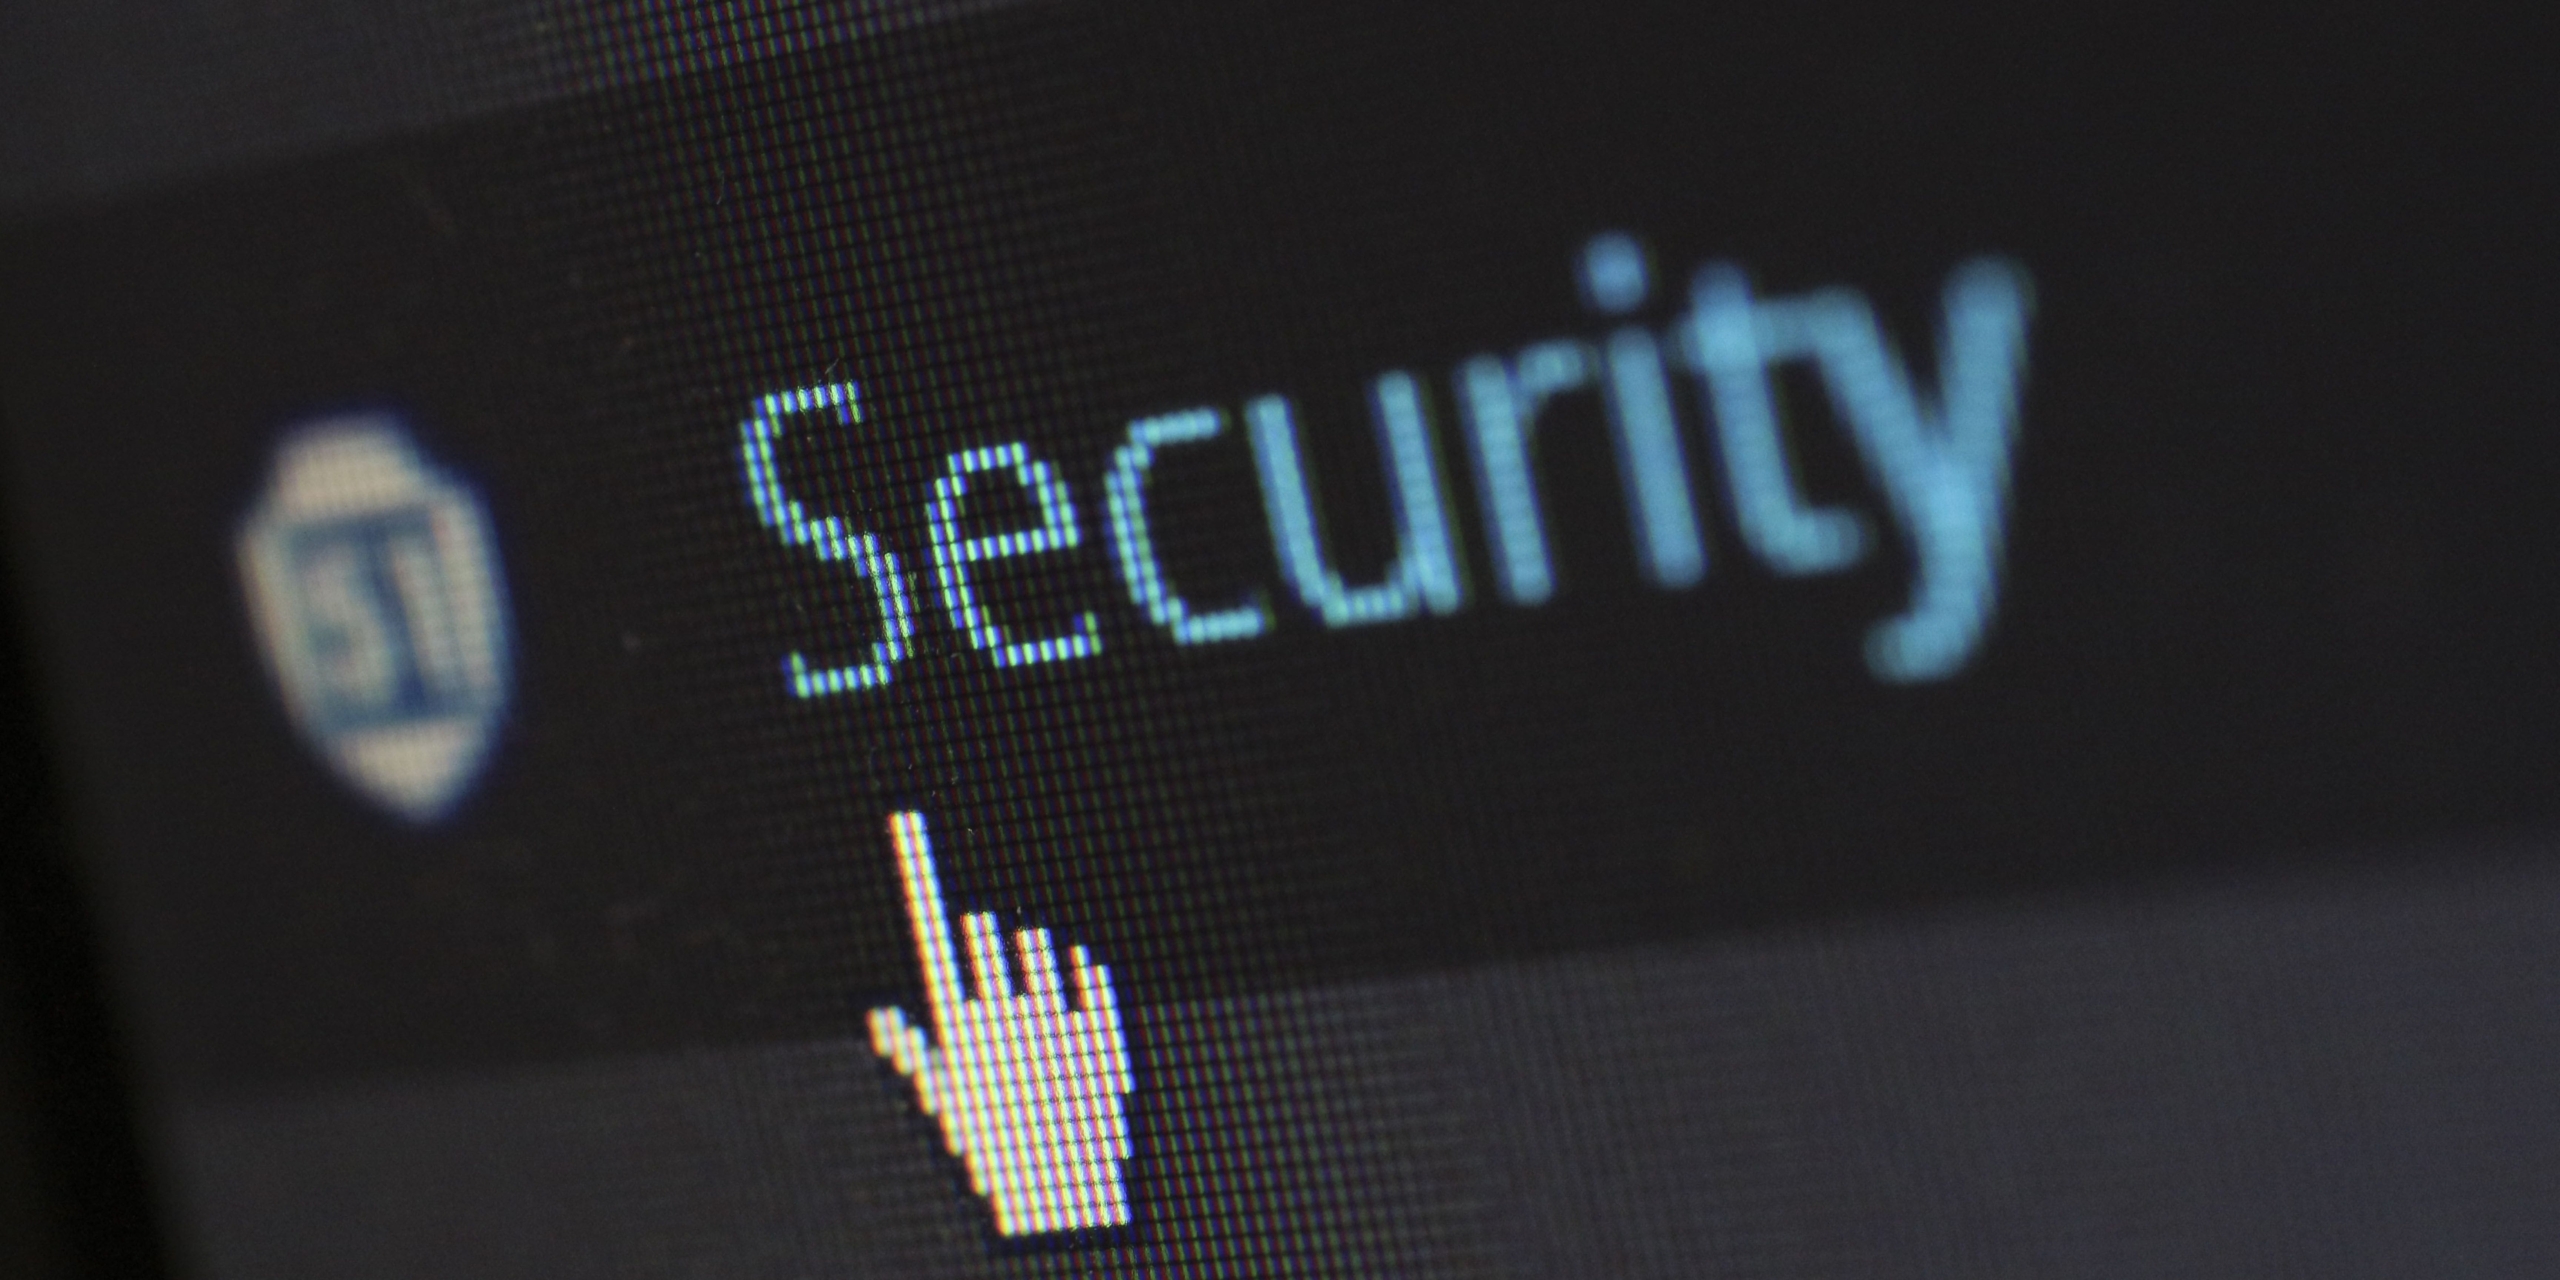 Nuove iniziative contro gli attacchi informatici: pubblicato il Decreto Cybersicurezza